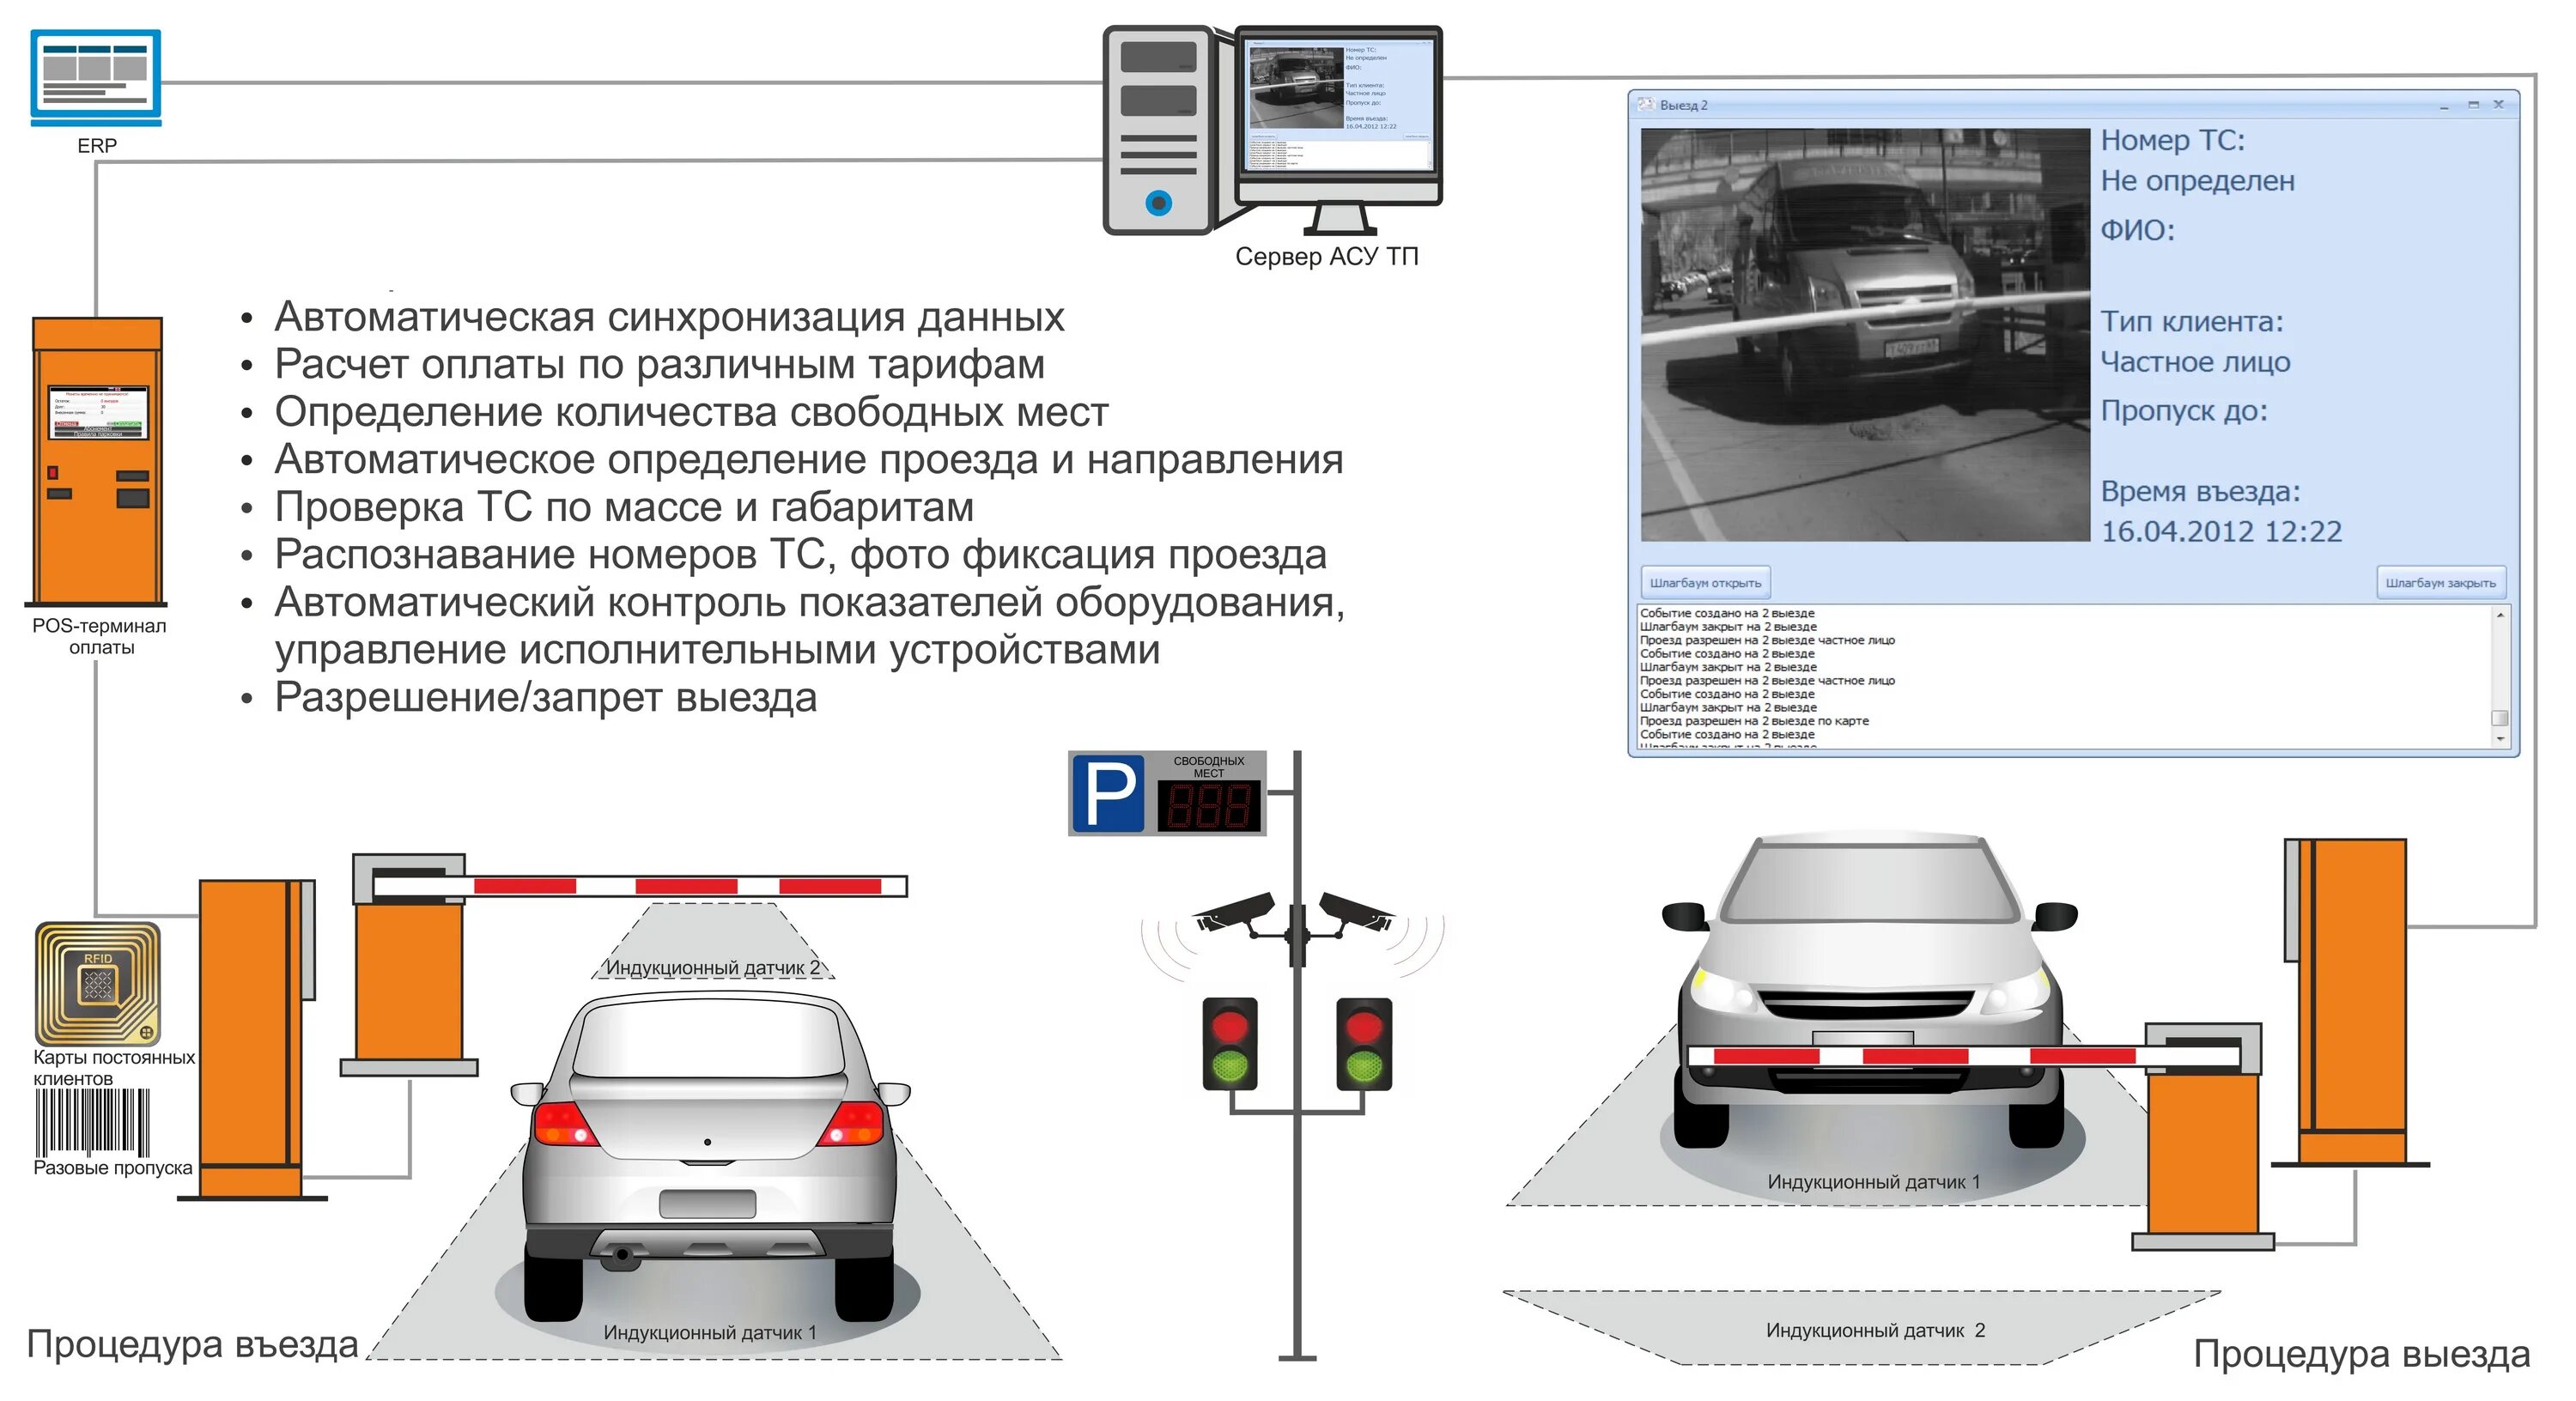 Москва инструкция машины. Автоматизированная парковка схема работы. Автоматическая парковочная система чертежи. Схема автоматизации парковки со шлагбаумом. Система автоматической парковки план схема.